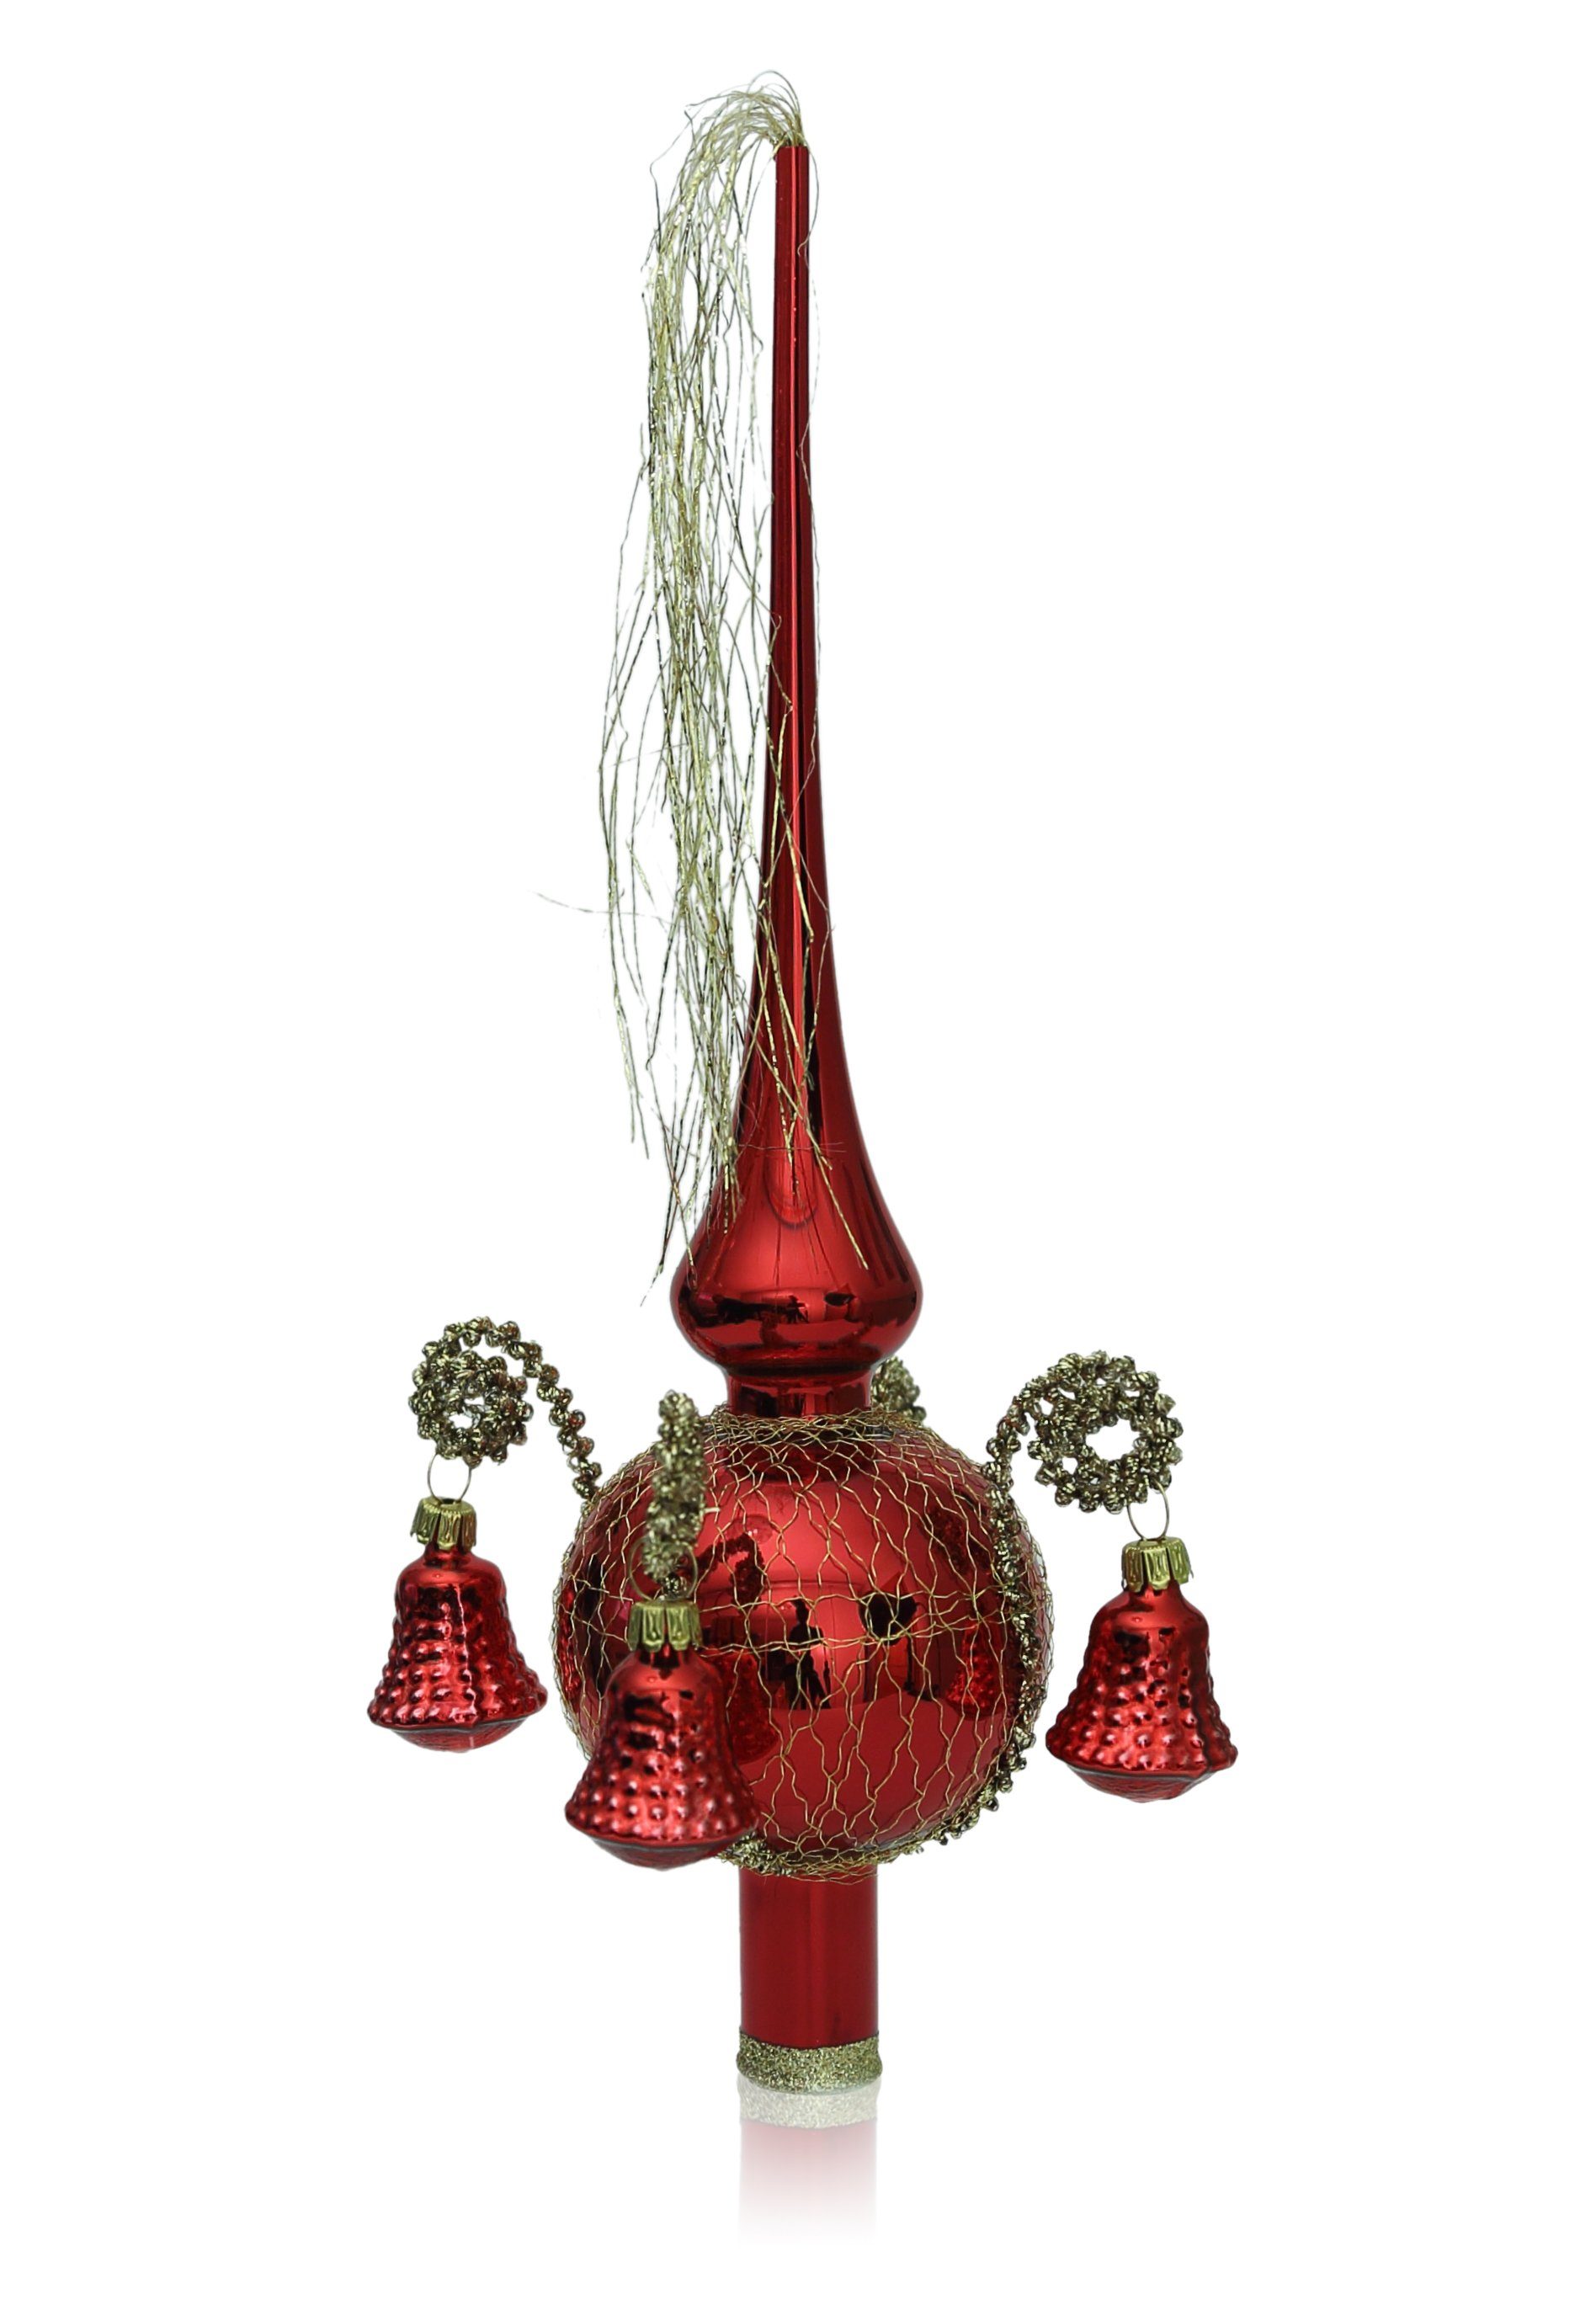 Lauschaer Glas Christbaumspitze Weihnachtsbaumspitze mit Formglöckchen, umsponnen mit Leonischem Draht, mundgeblasen, handdekoriert, handbemalt, in Lauscha hergestellt rot glanz